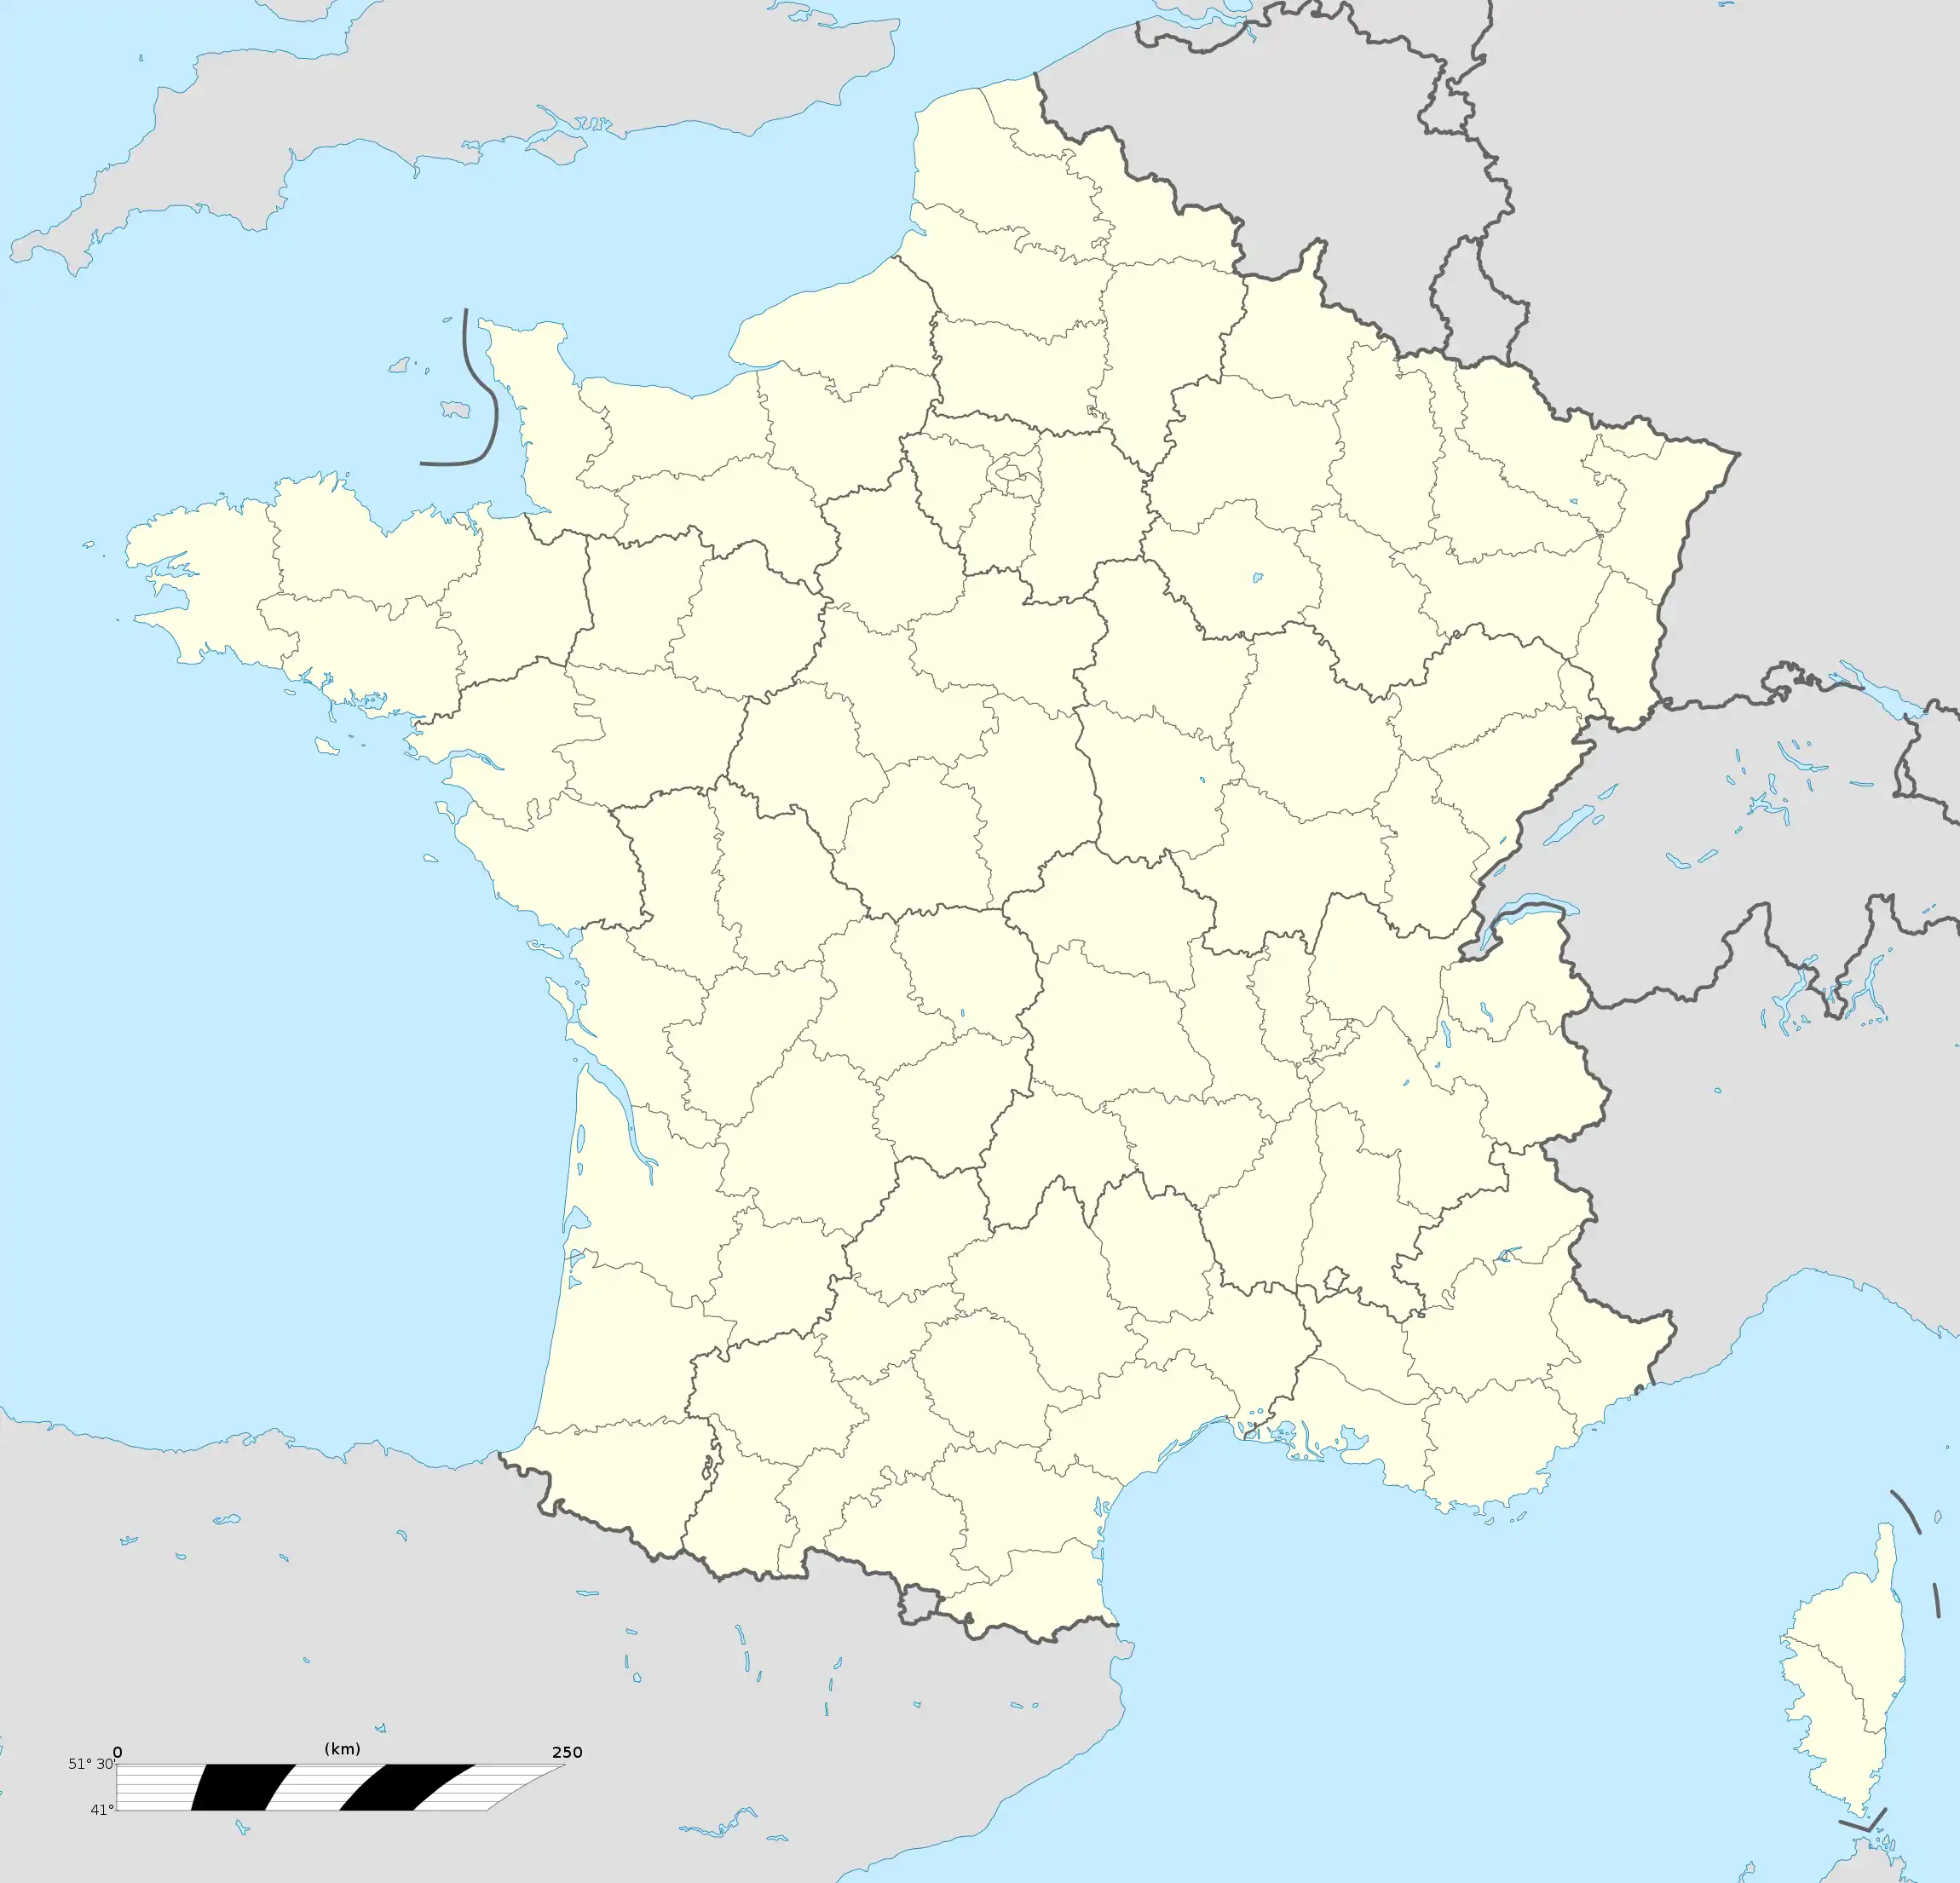 voir sur la carte de France